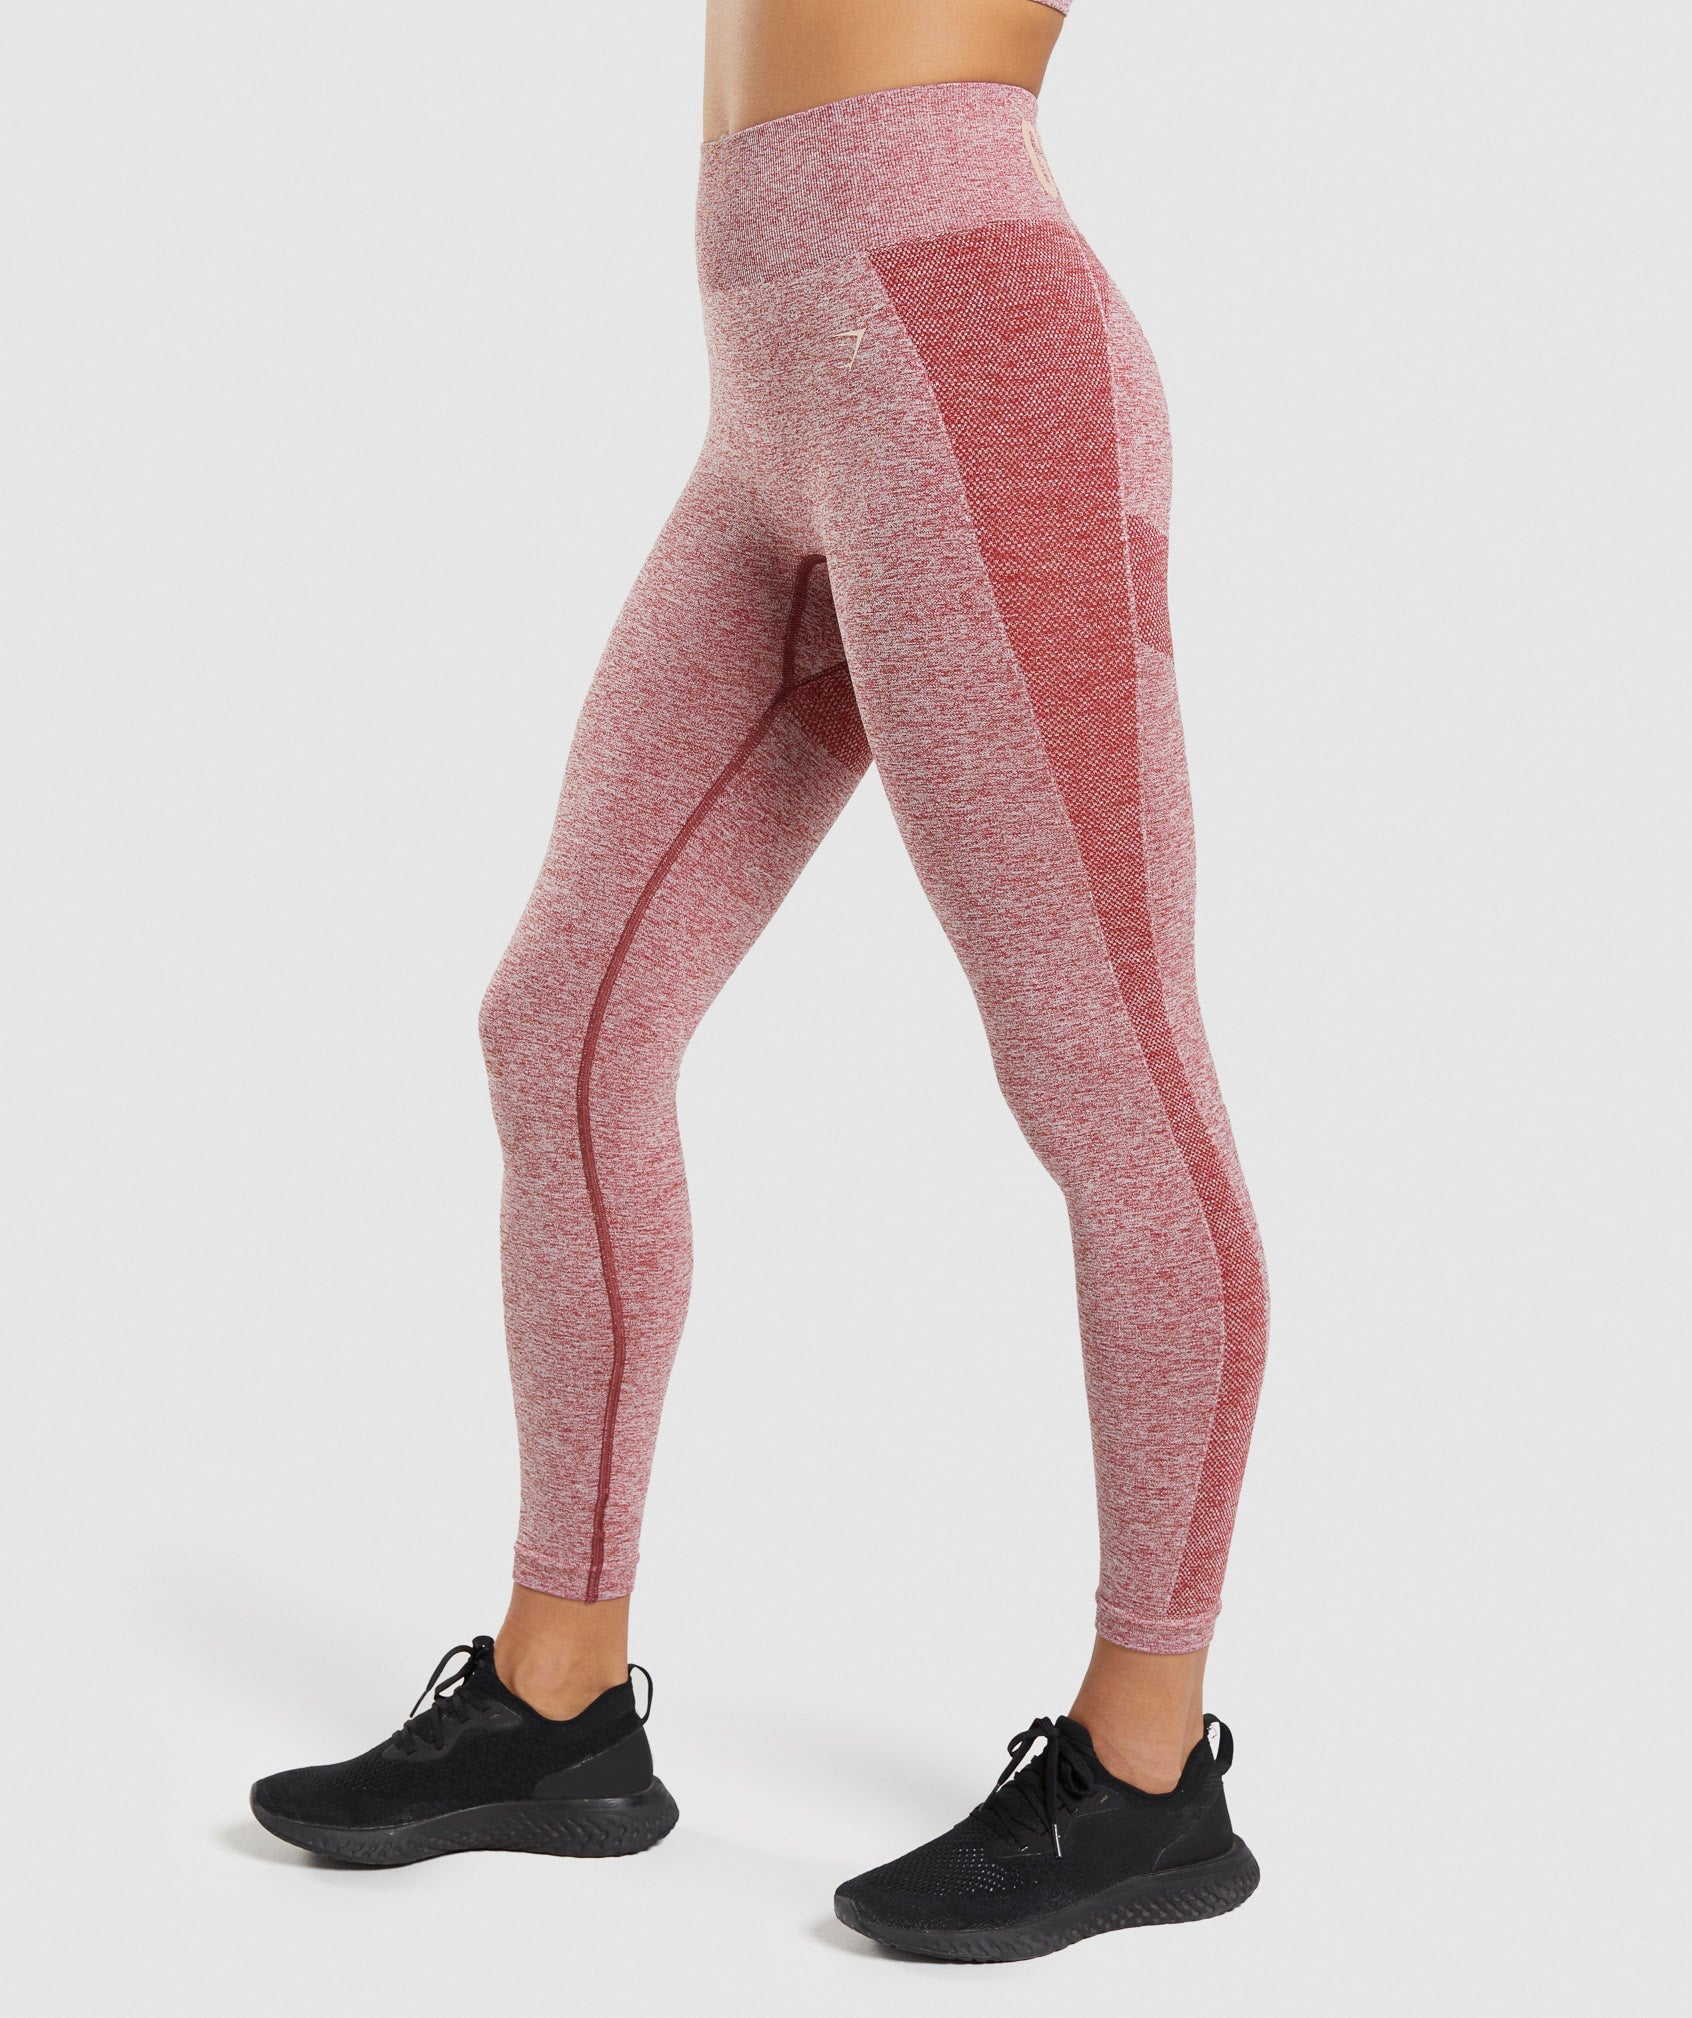 Gymshark Flex Leggings Gray / pink Women's xs full length gym pants